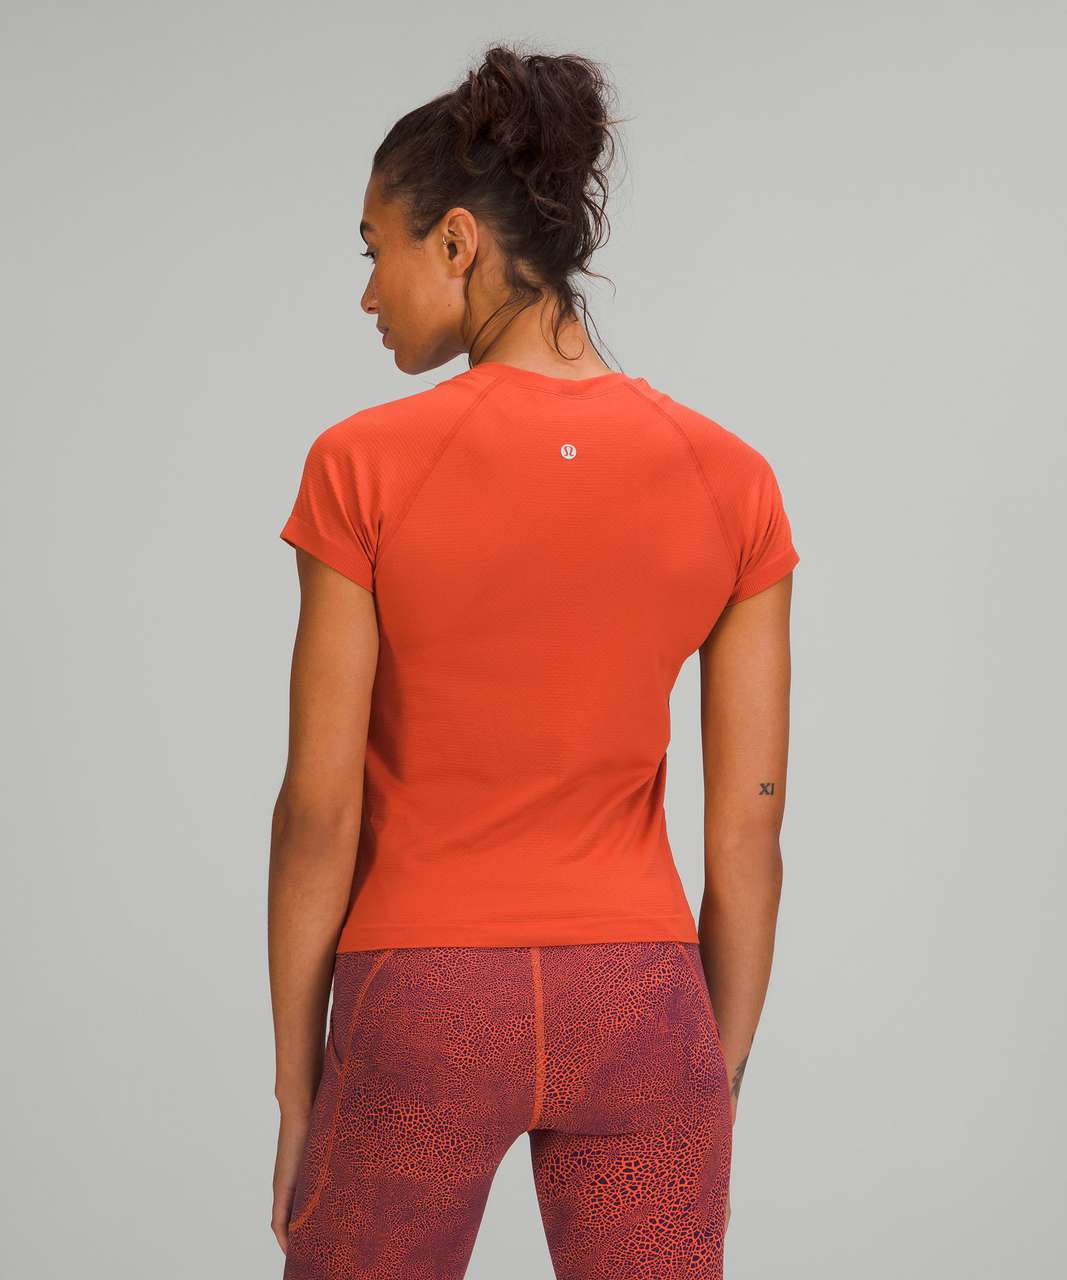 Lululemon Swiftly Tech Short Sleeve Shirt 2.0 *Race Length - Canyon Orange / Canyon Orange